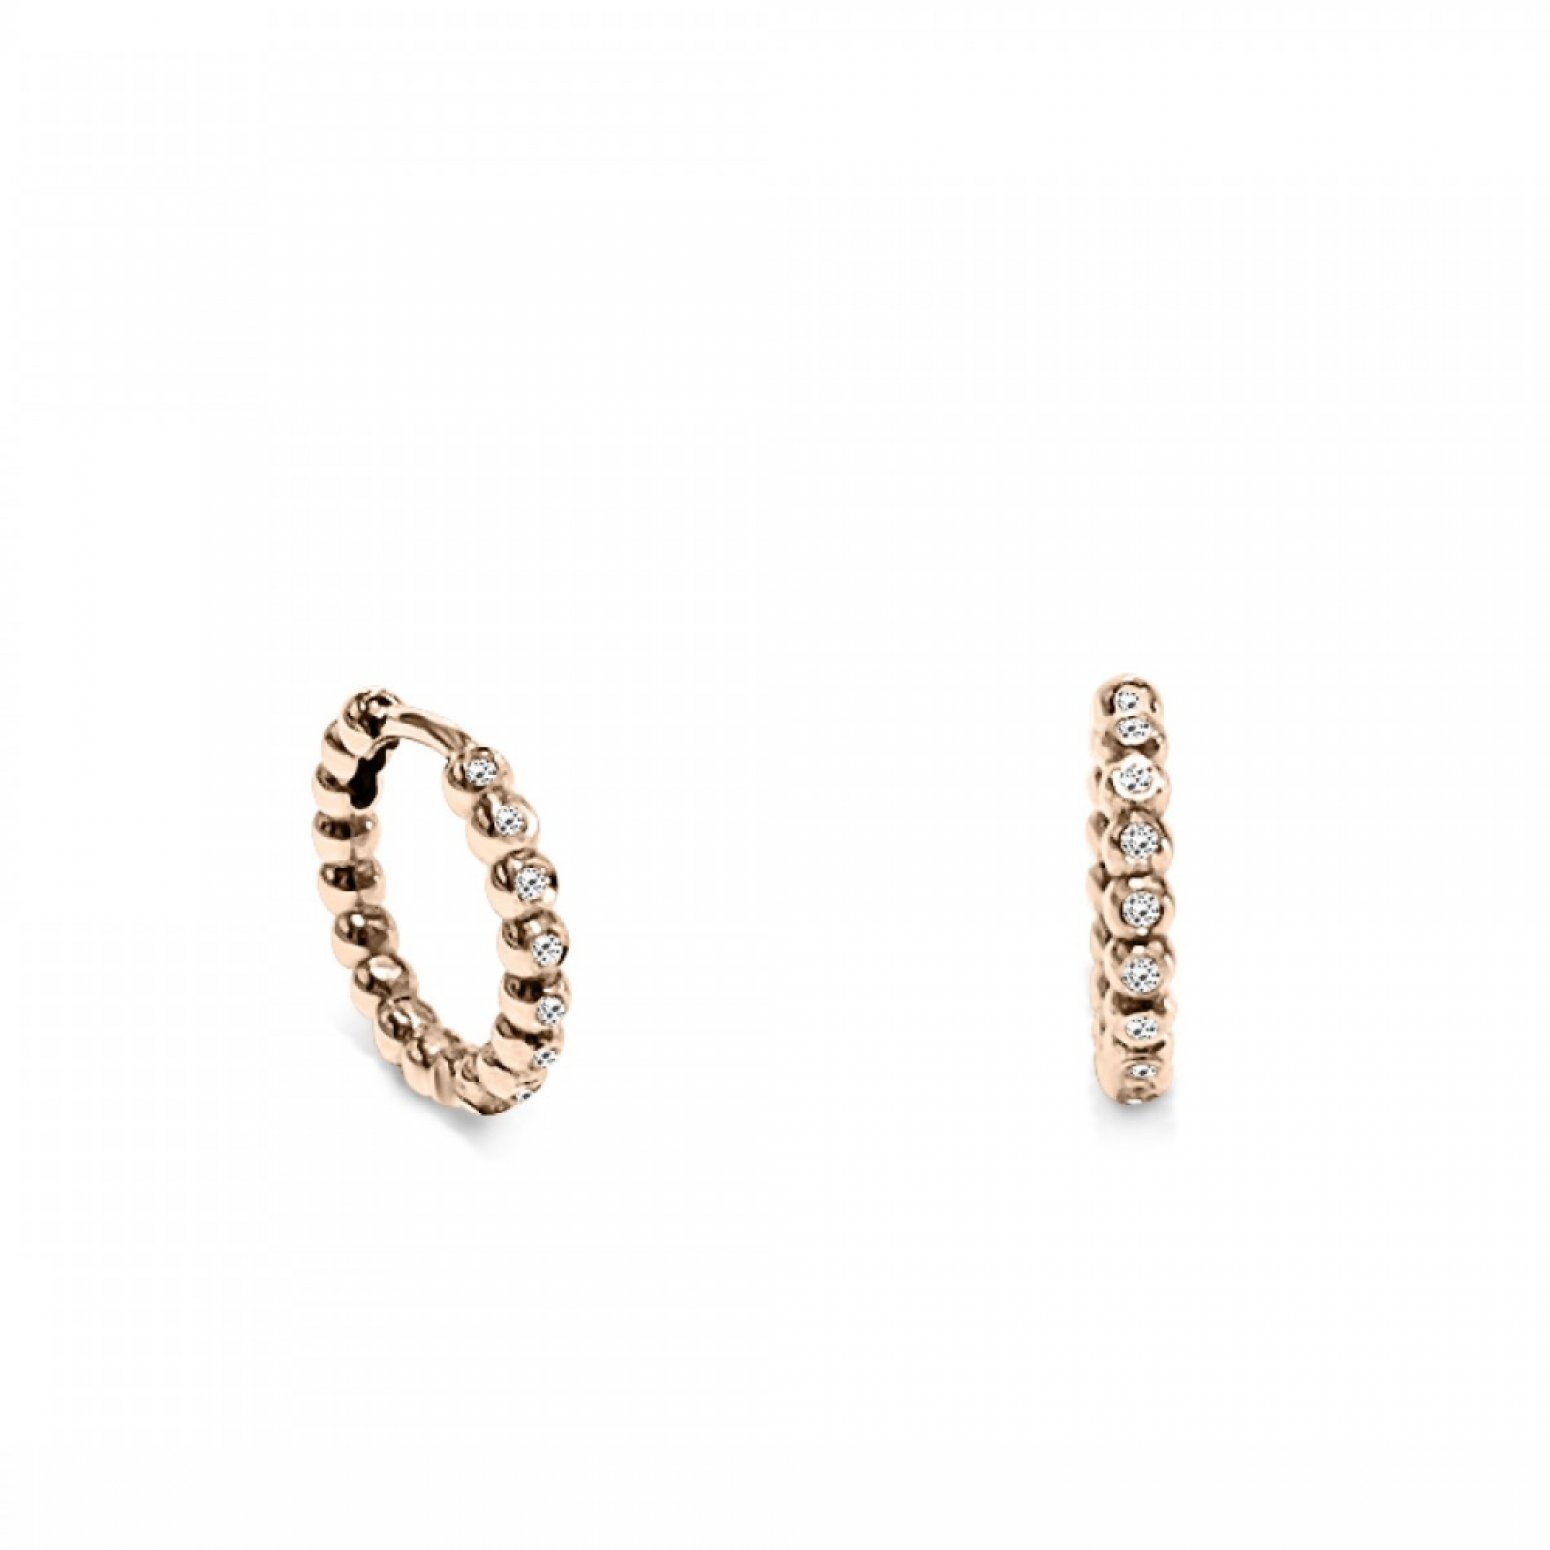 Hoop earrings 18K pink gold with diamonds 0.08ct, VS1, H, sk2973 EARRINGS Κοσμηματα - chrilia.gr